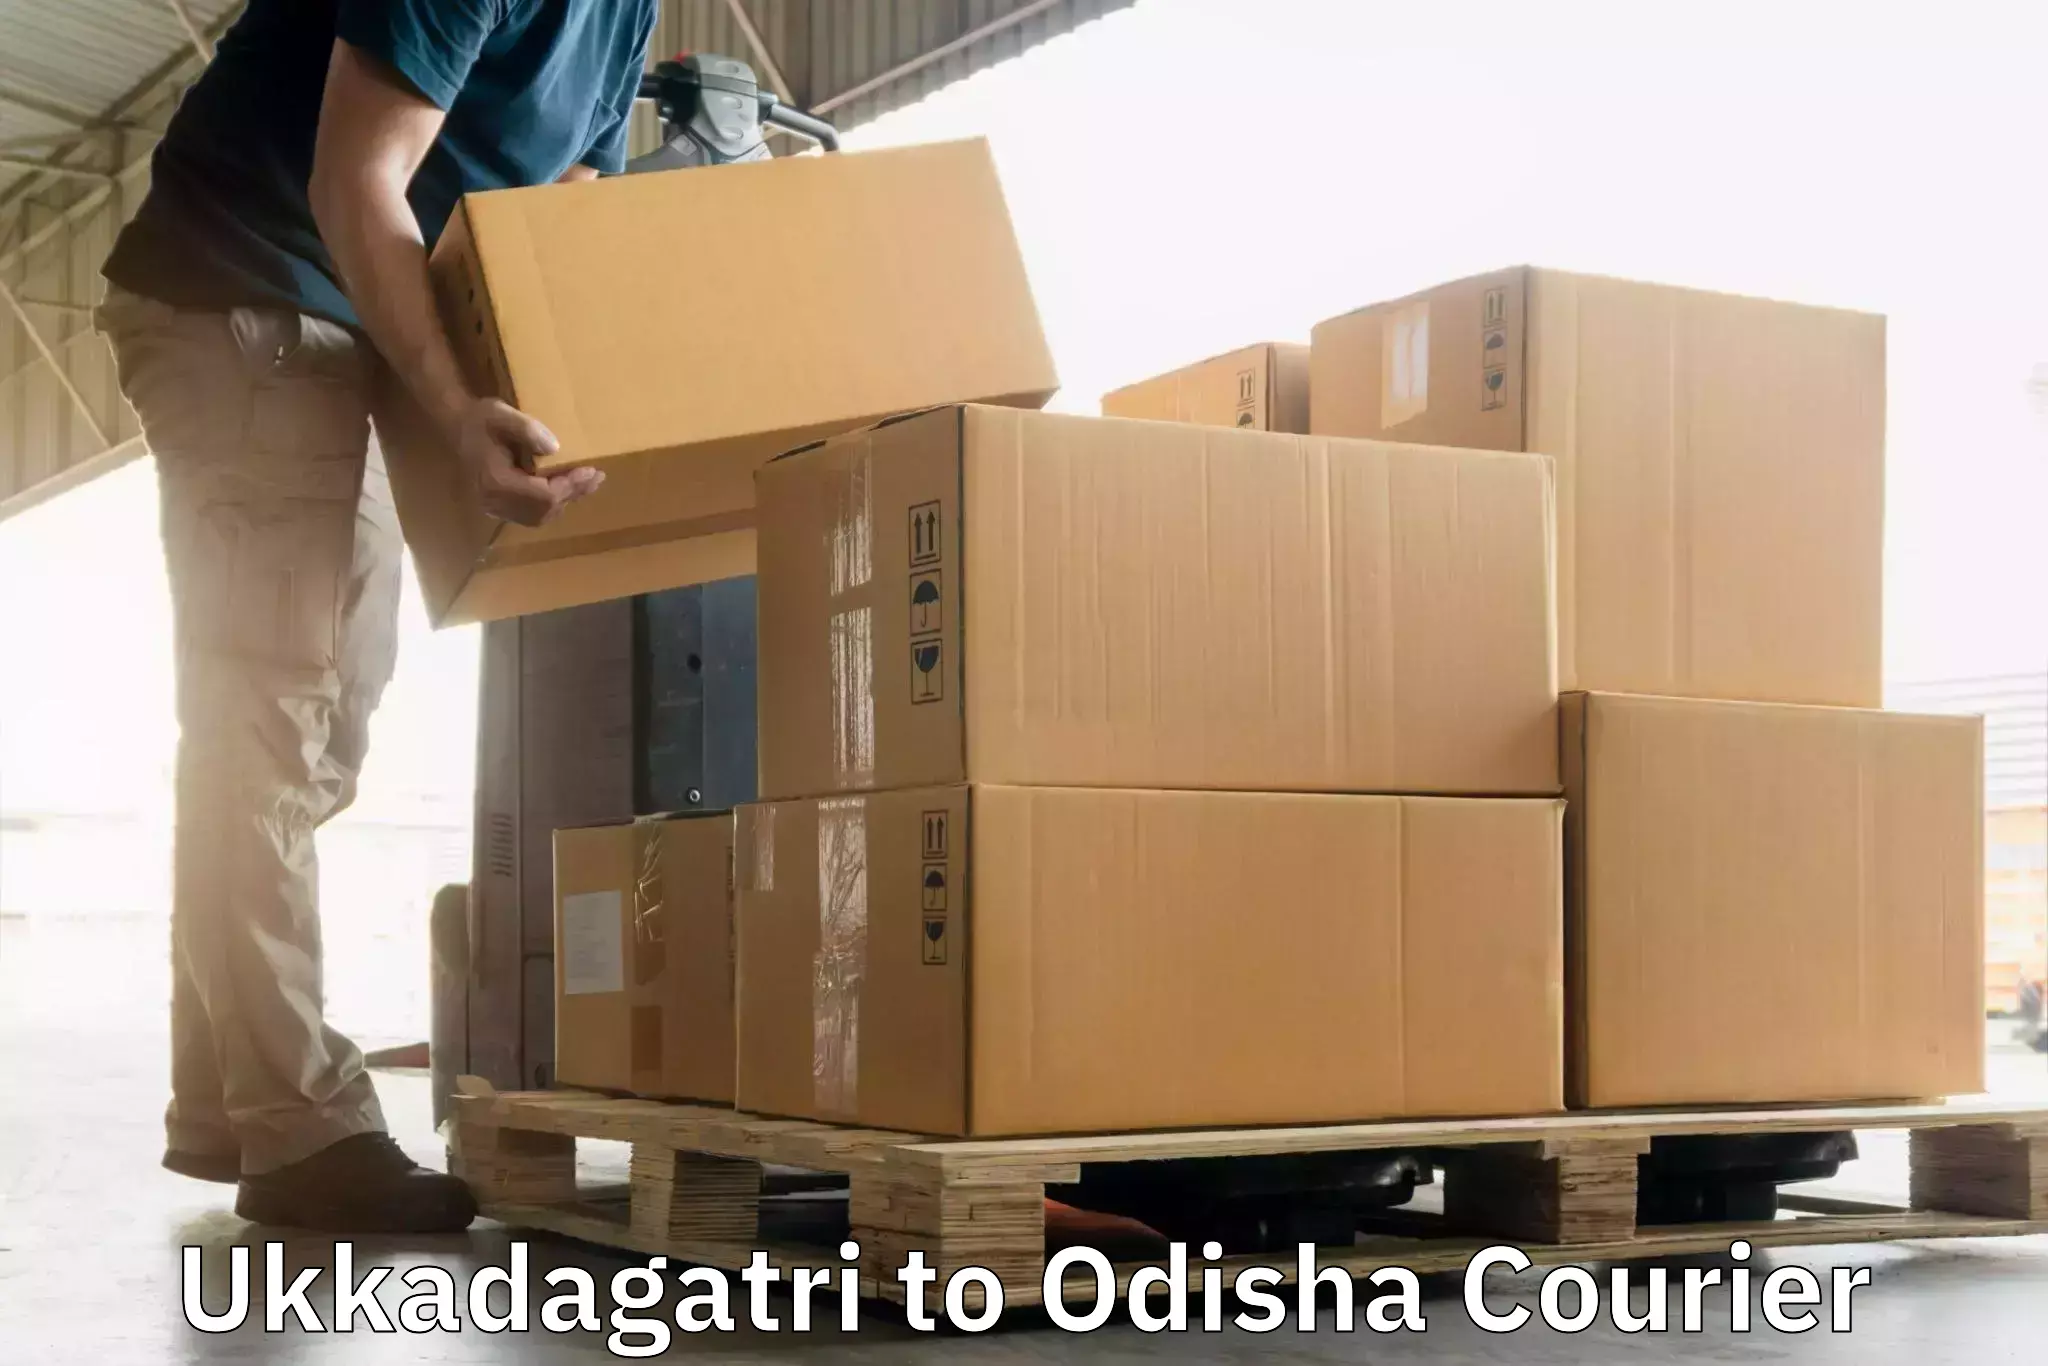 High-speed delivery Ukkadagatri to Bargarh